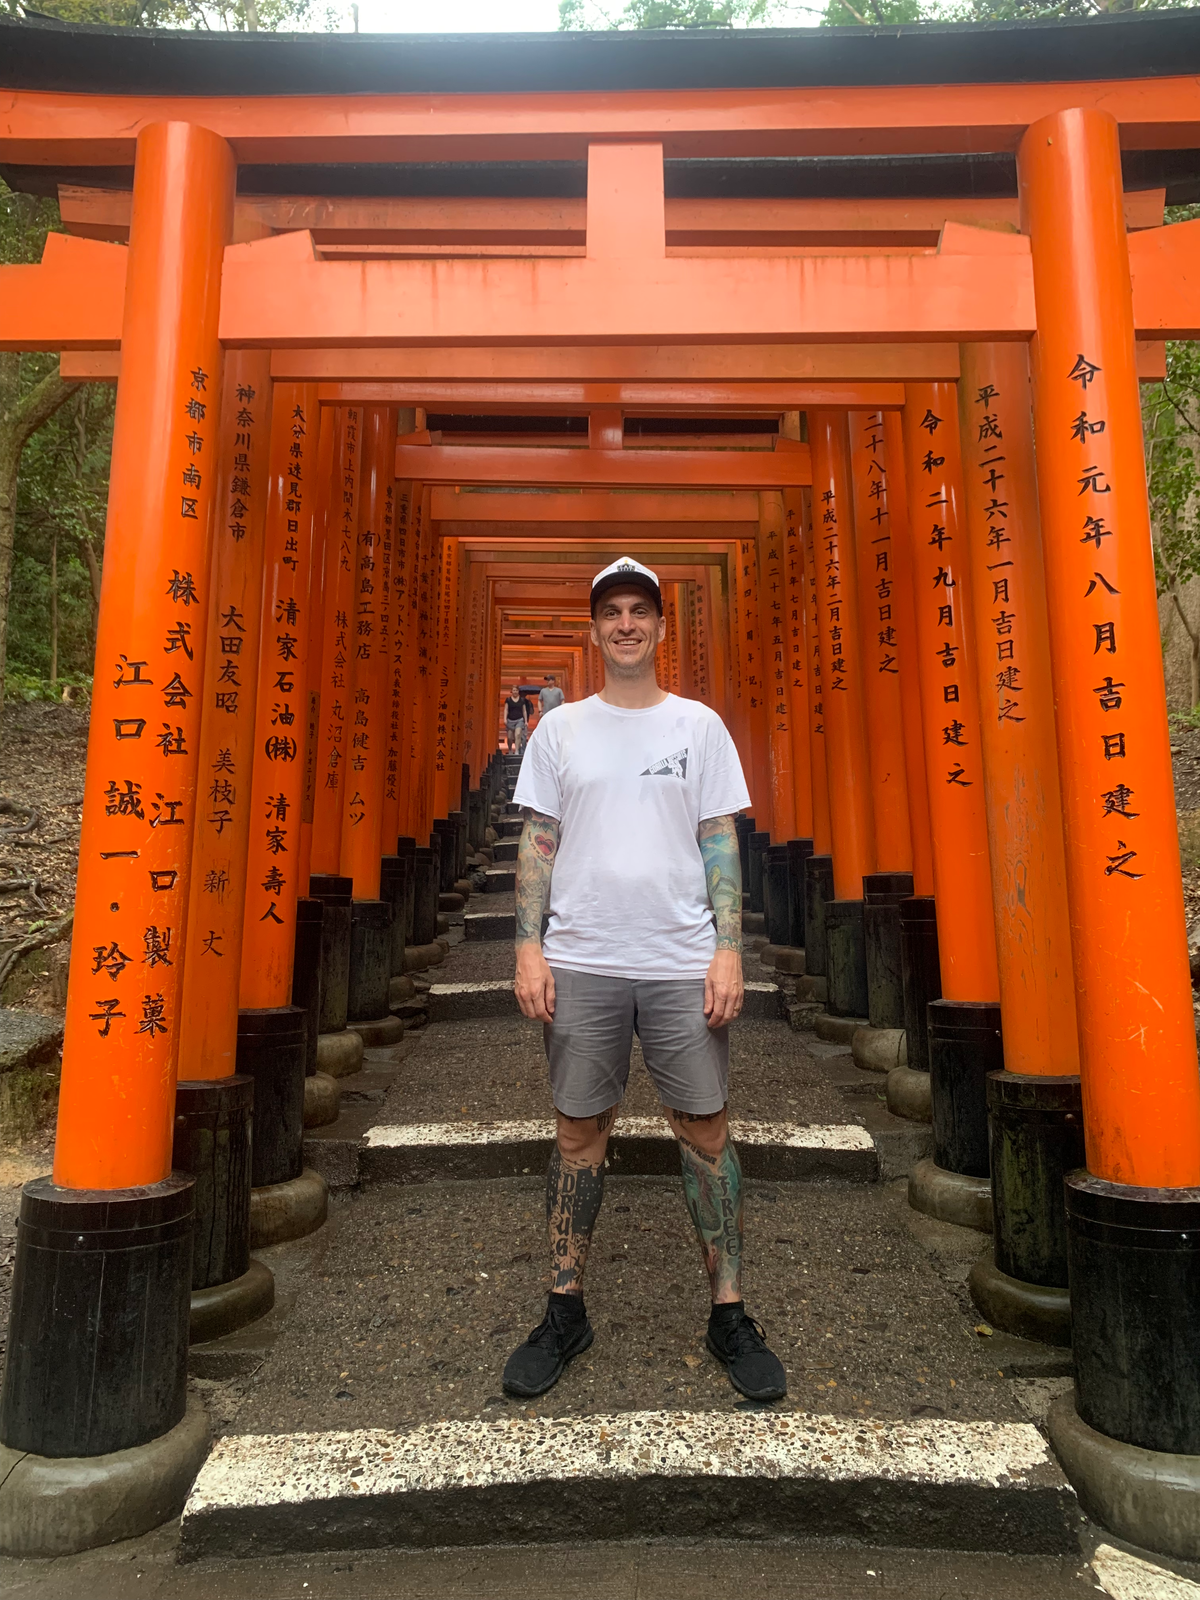 Ryan Smith at arches near Fushimi Inari Shrine in Kyoto